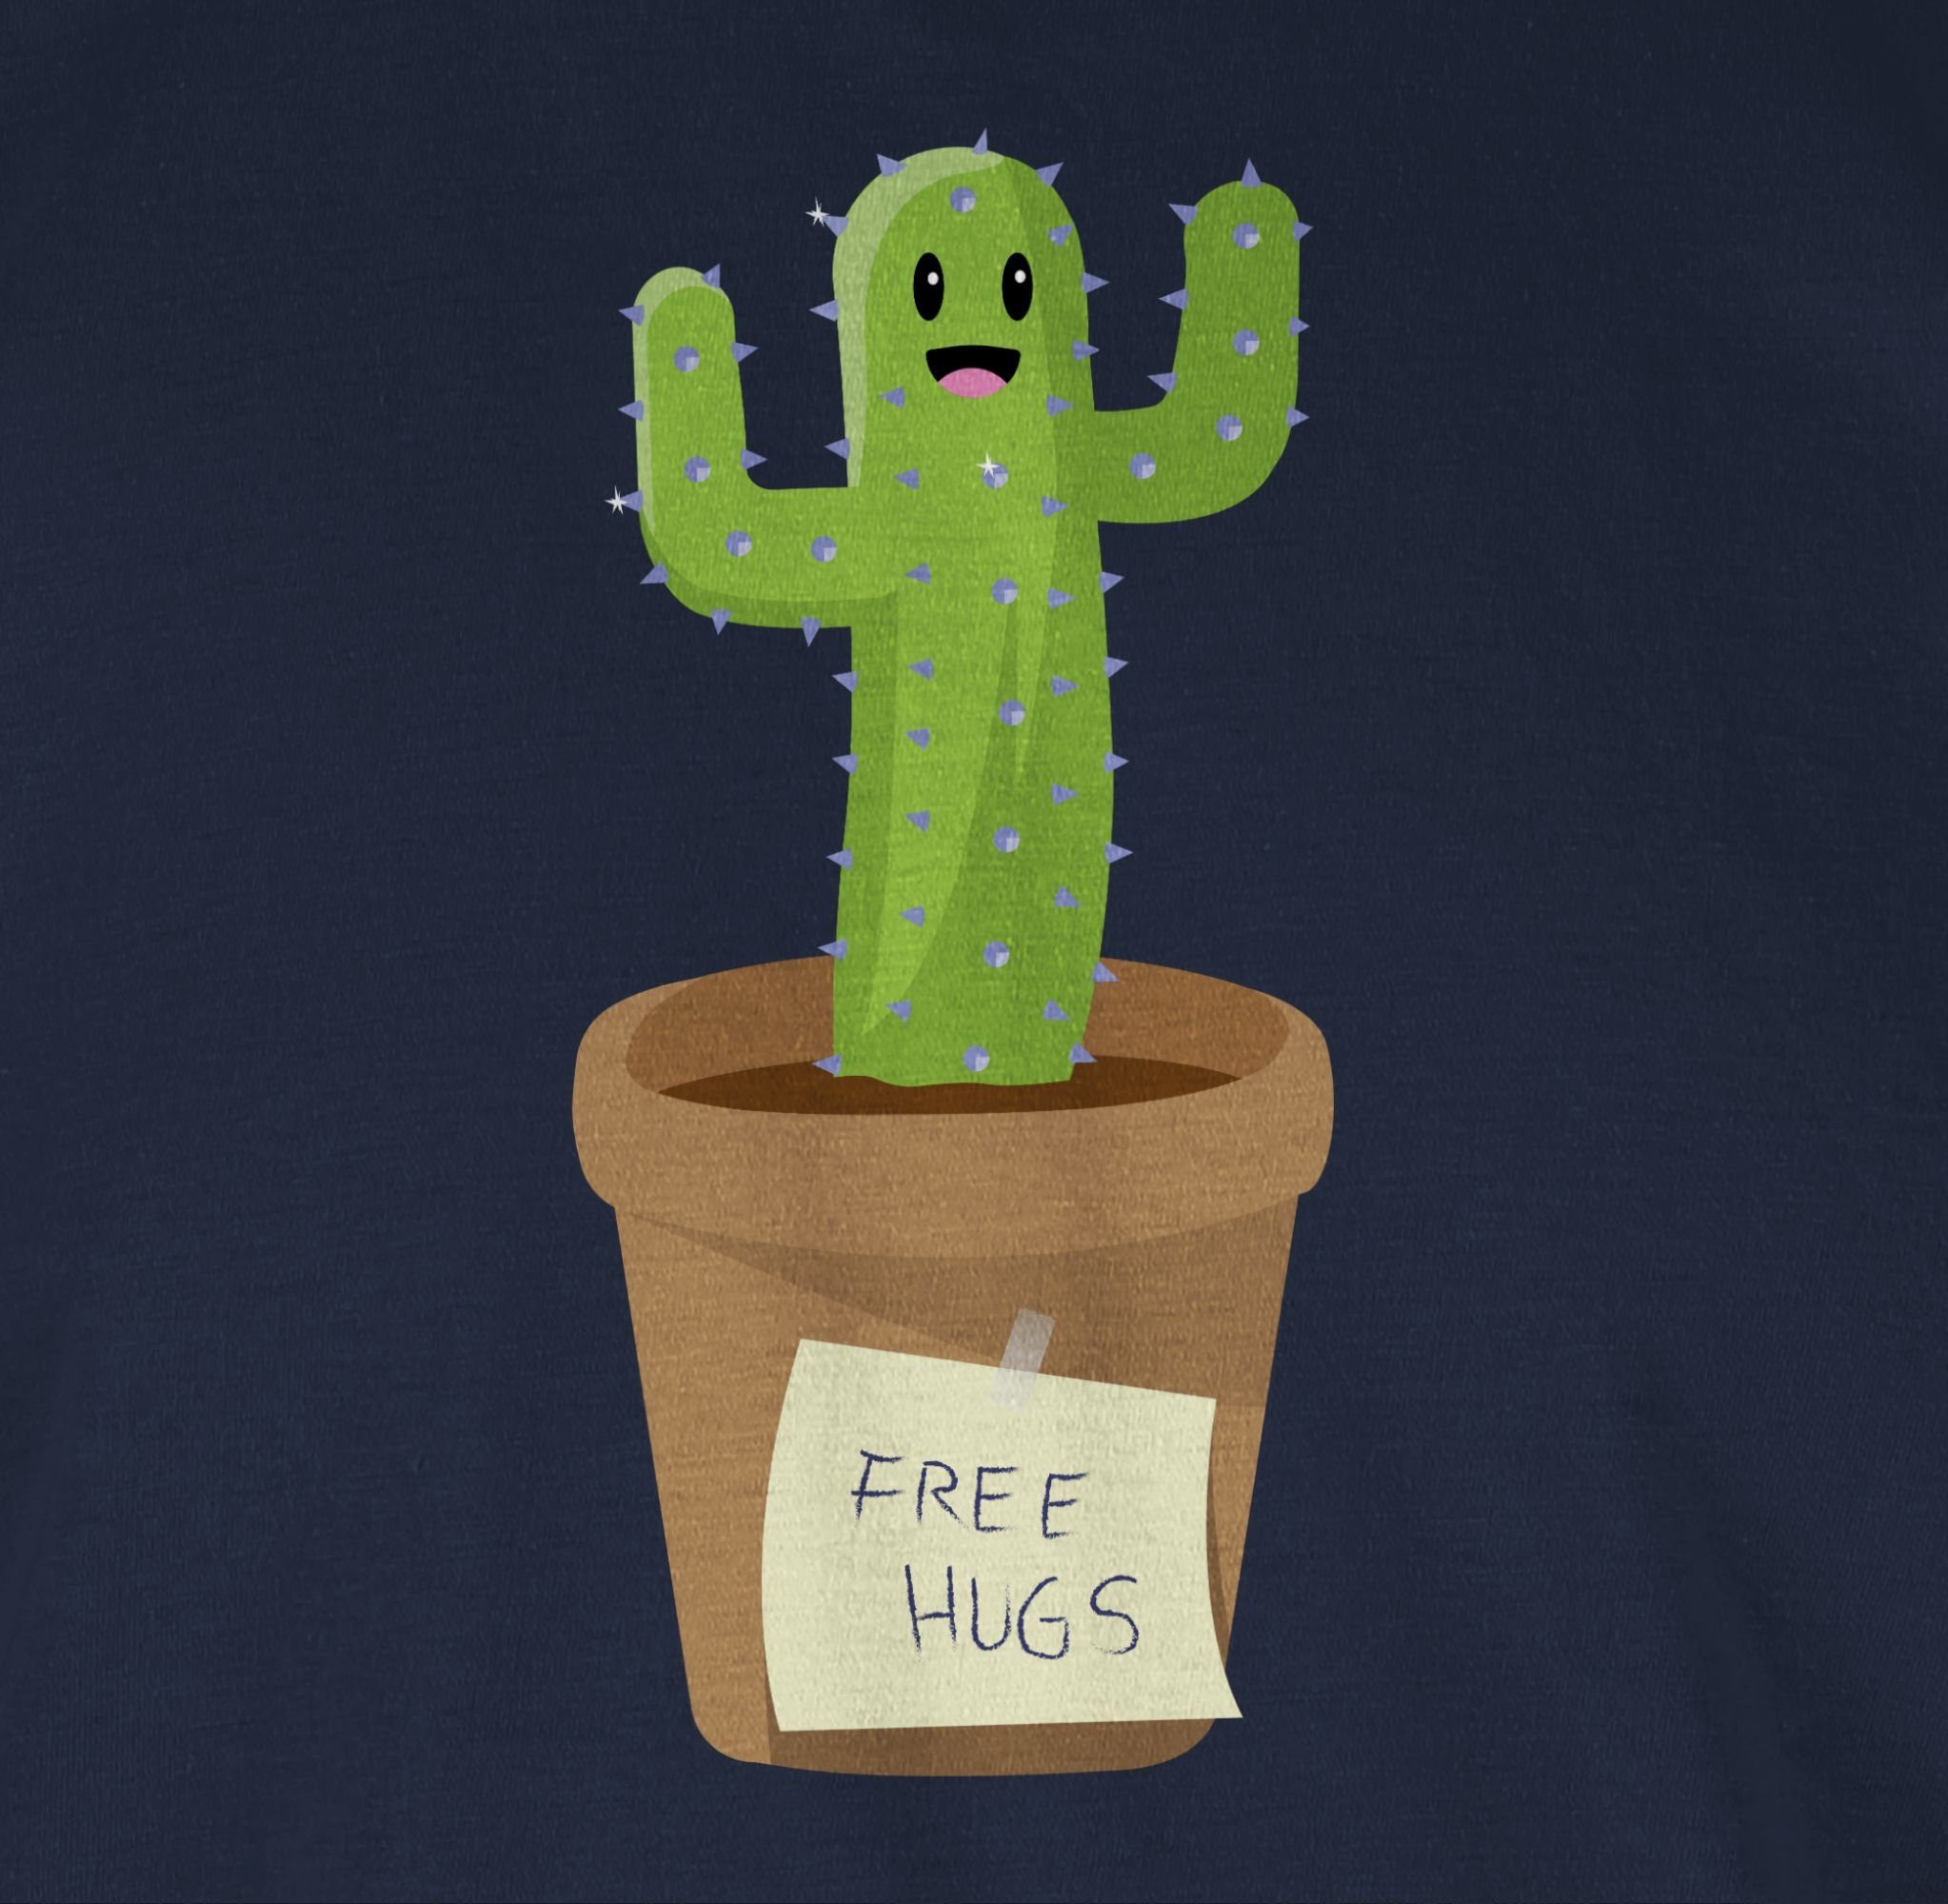 Sprüche Kaktus Free Shirtracer Navy T-Shirt 03 Blau Hugs Statement